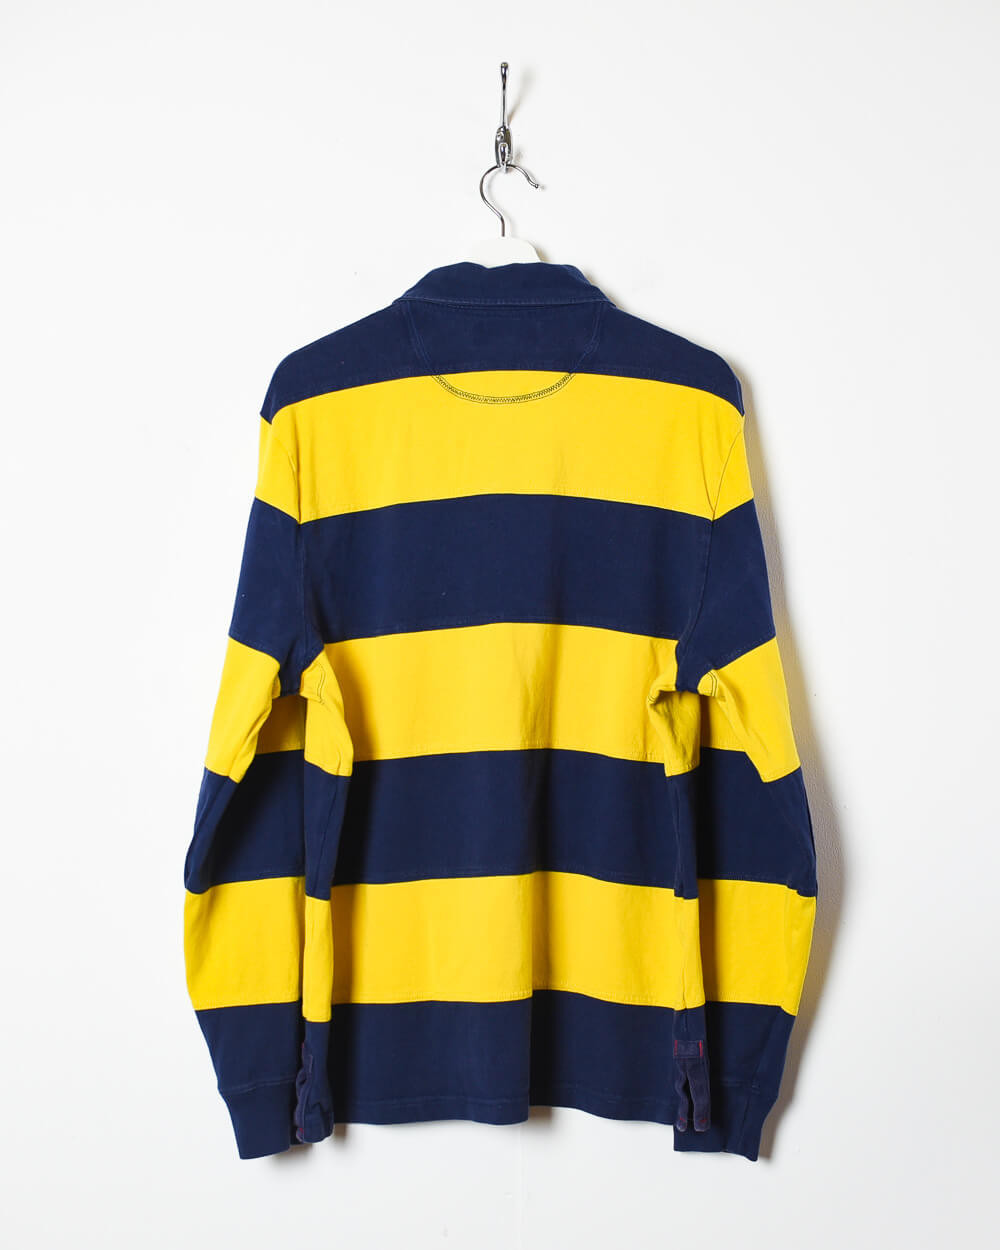 Yellow Ralph Lauren Rugby Shirt - Medium